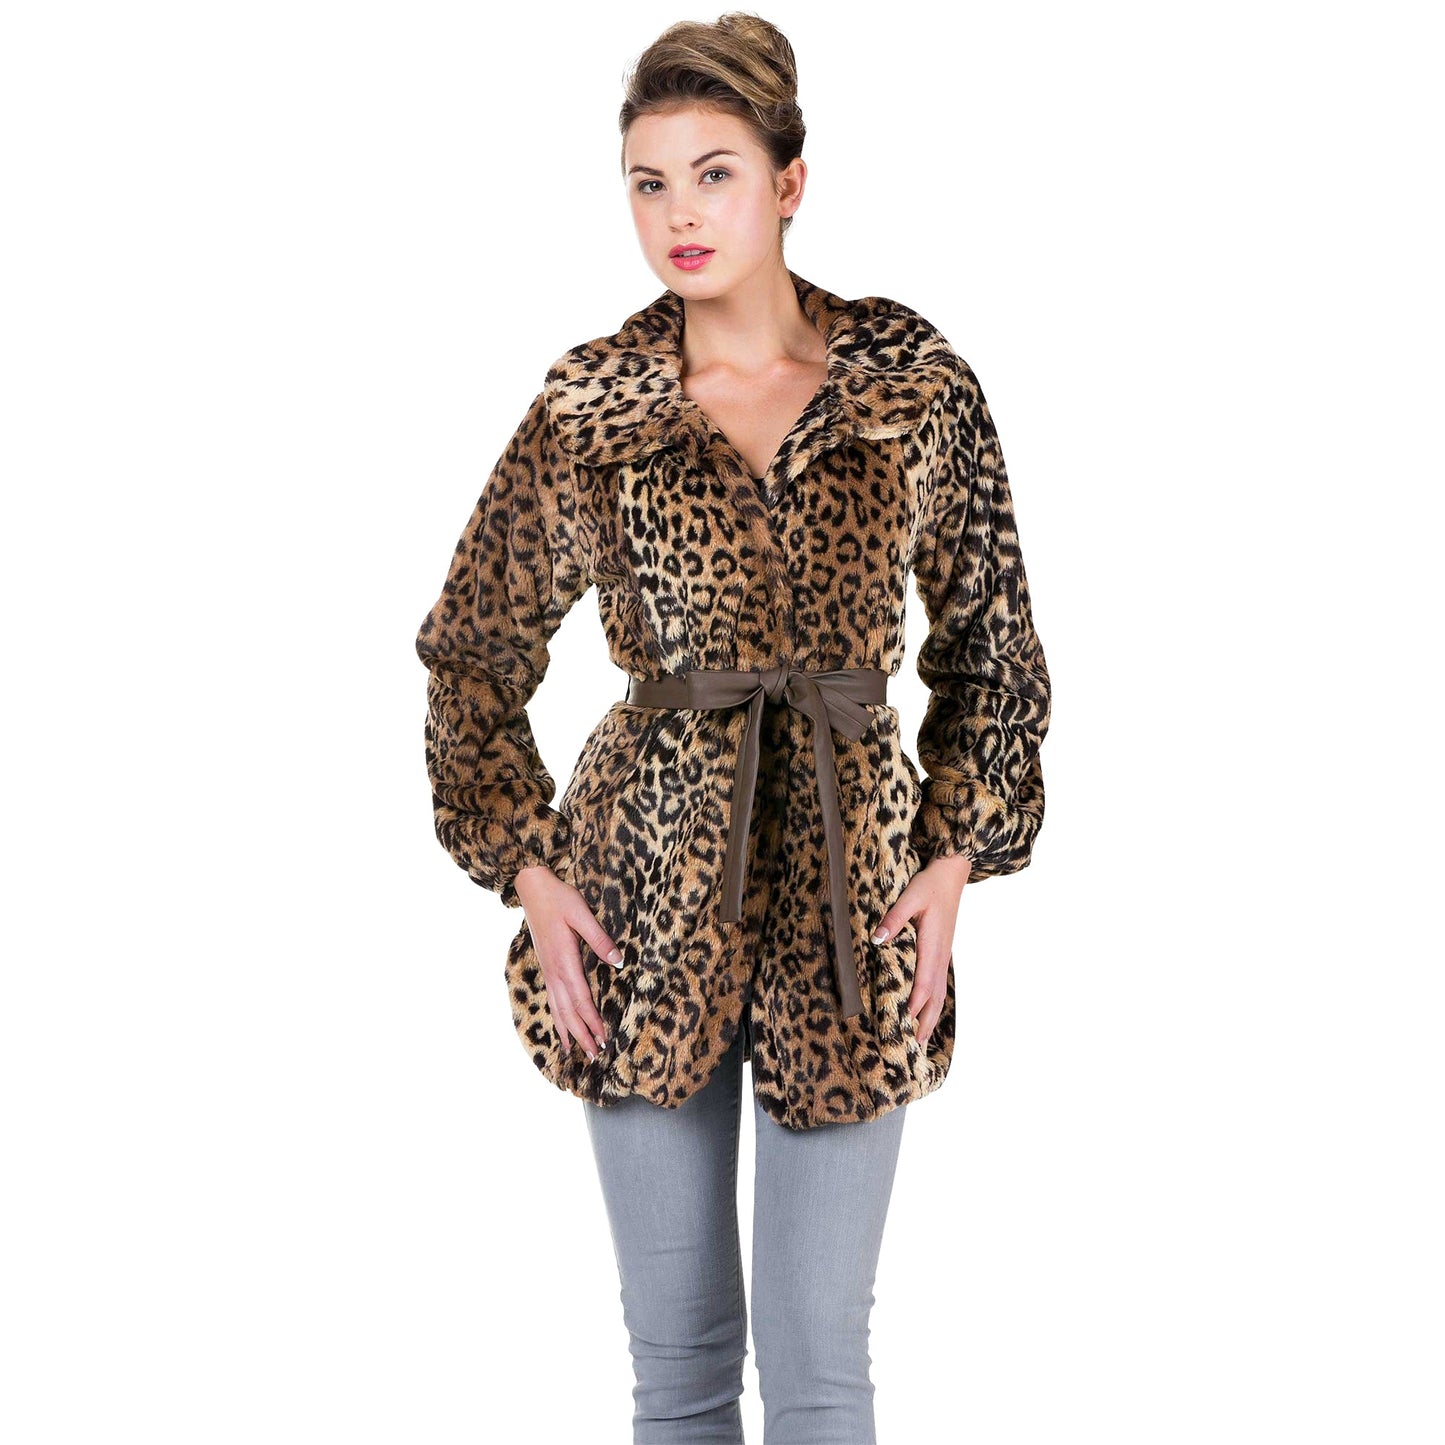 Women's Faux Fur Jacket with Faux Leather Belt - Shop Lev